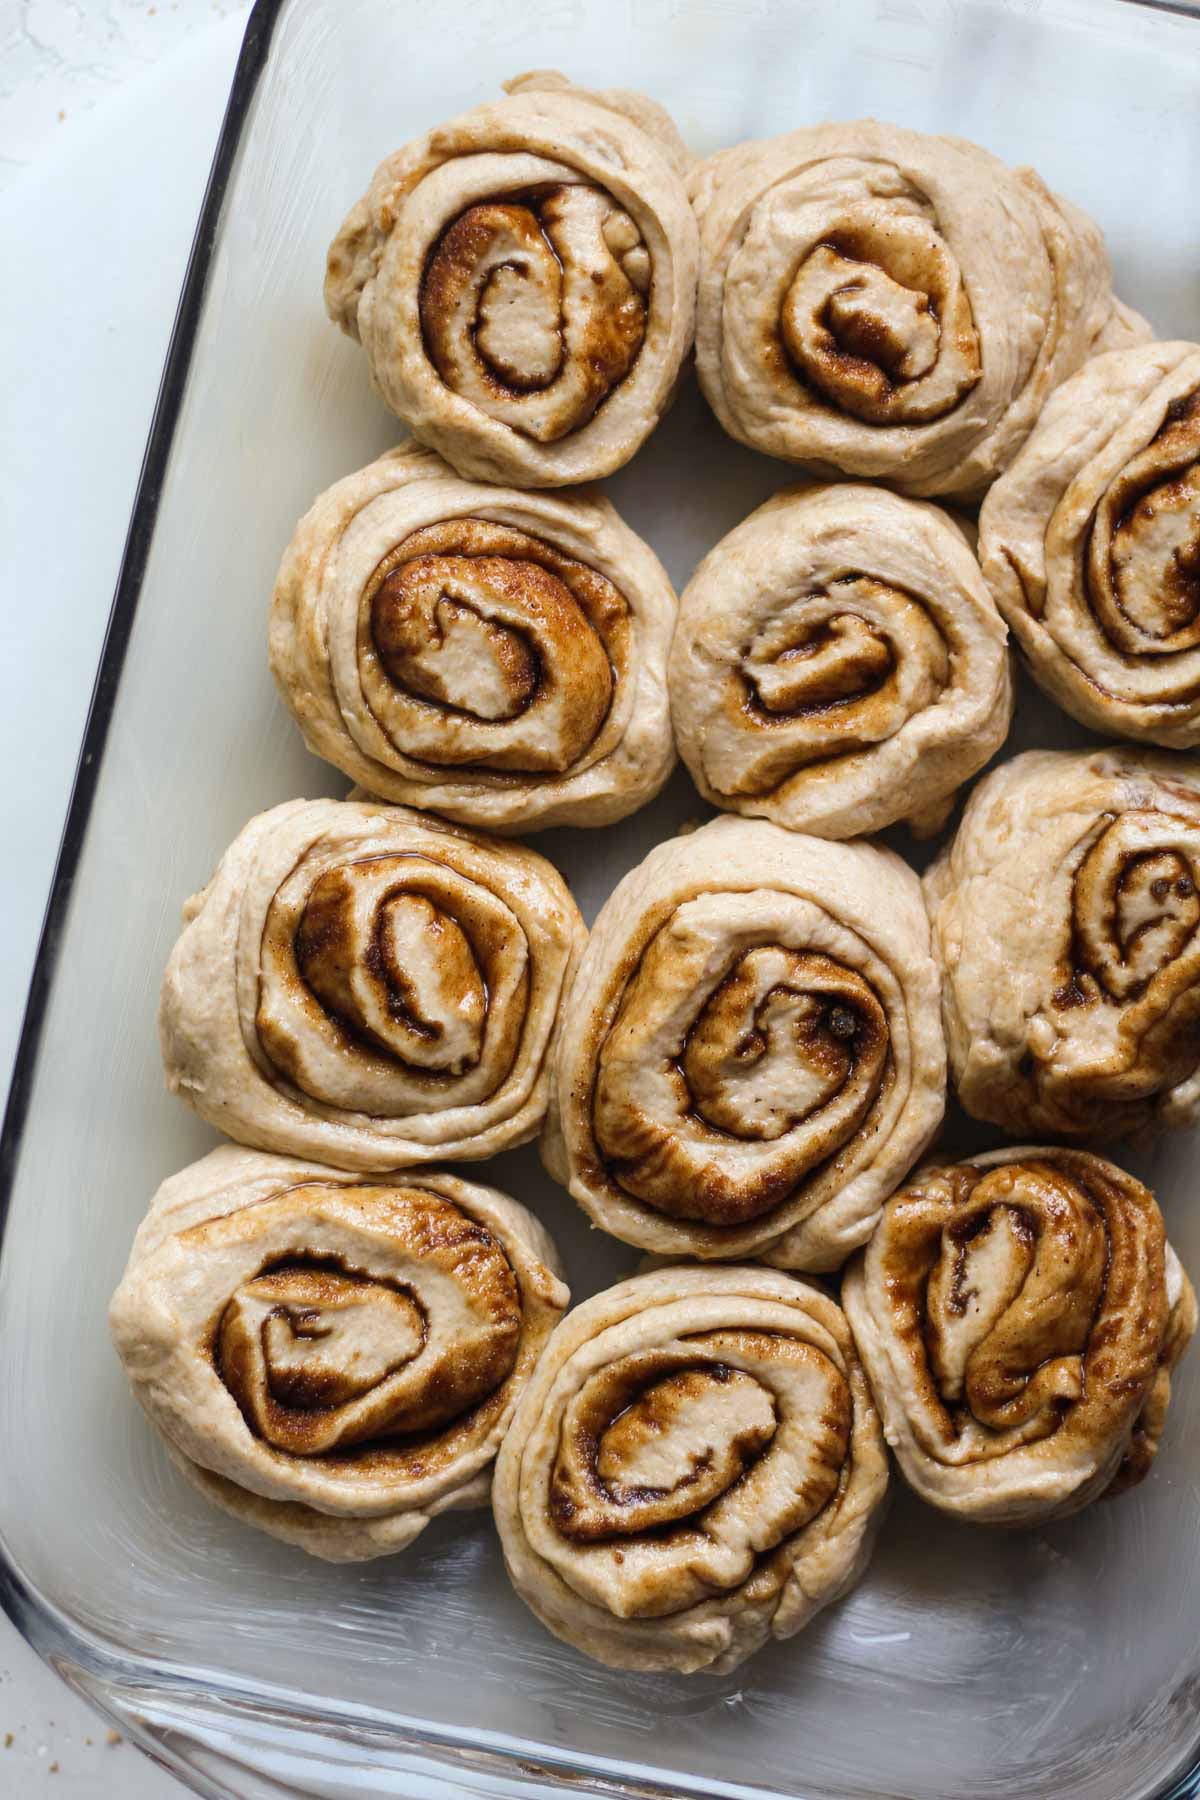 Sourdough cinnamon rolls in a pan